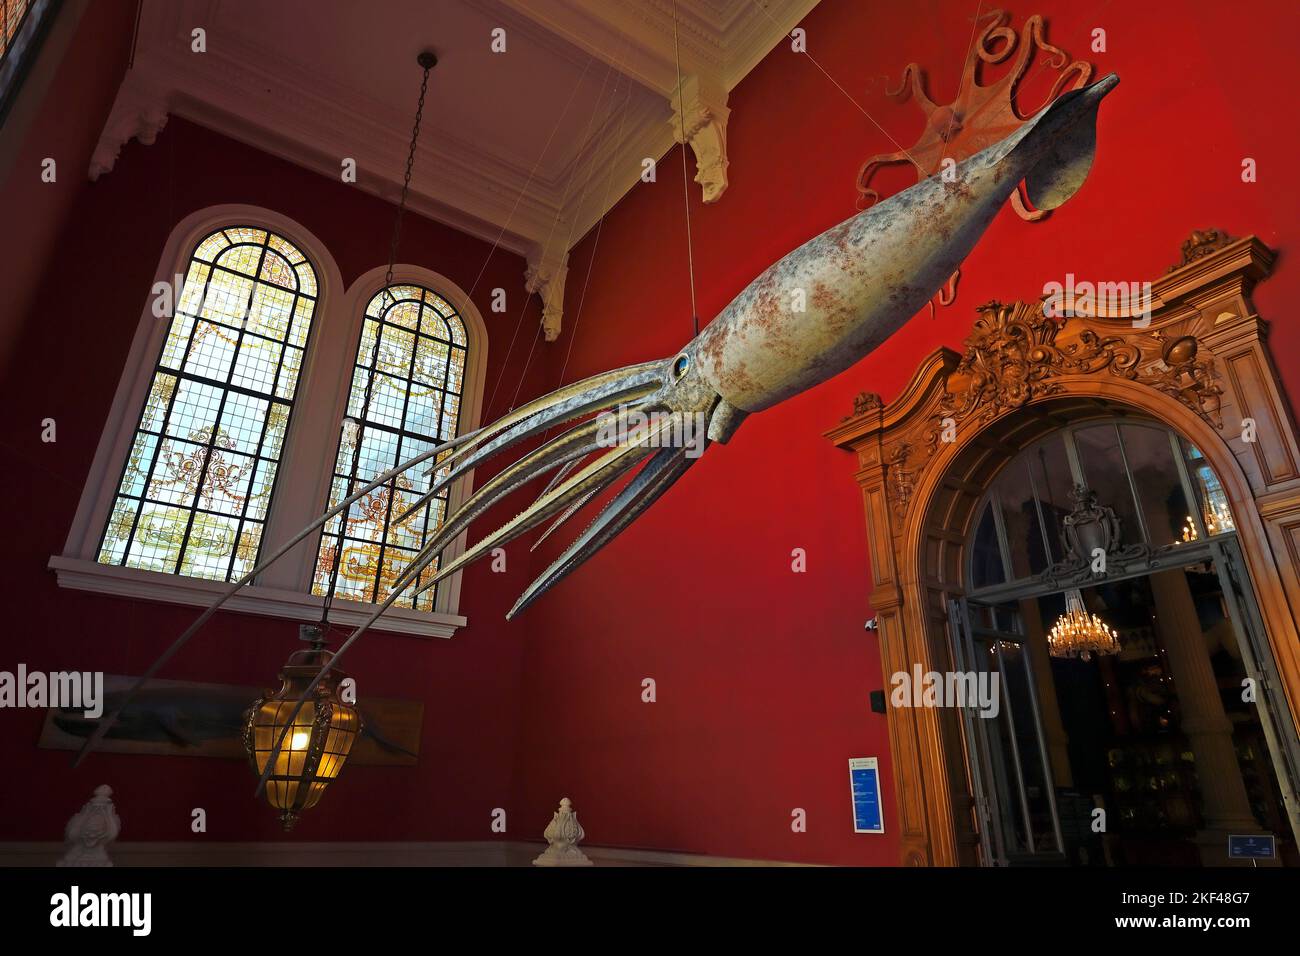 Modell eines Riesenkraken, Ozeanographisches Museum Monaco, Monaco Ville, Monaco Stock Photo